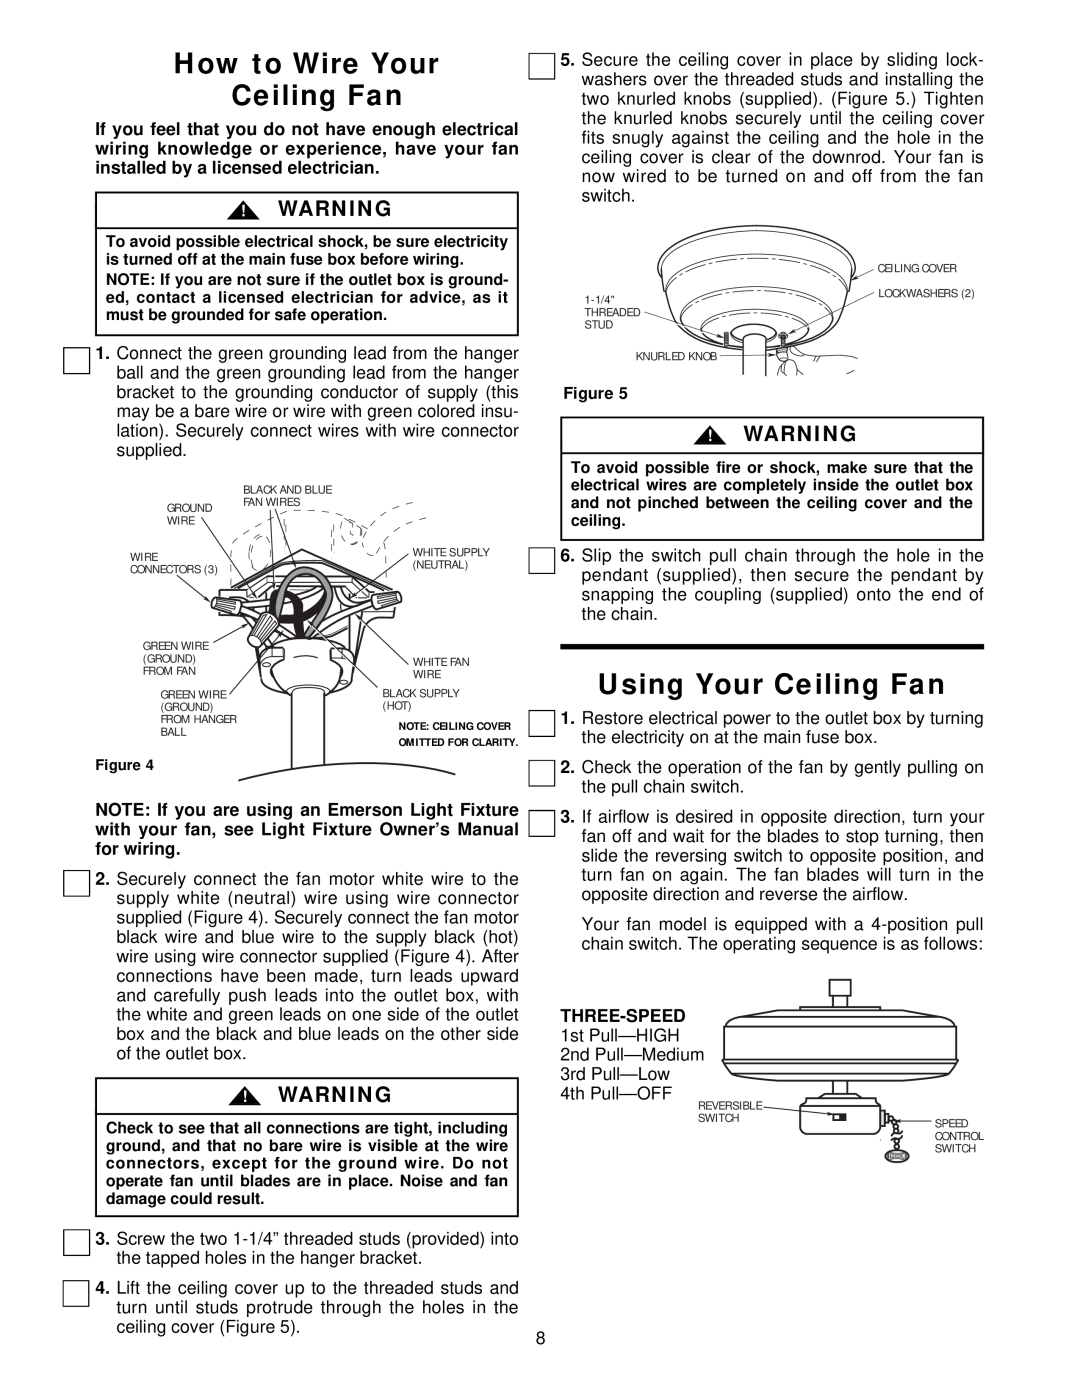 Emerson CF3900HTW01, CF3900WPB01, CF3900WW01, CF3900AB01, CF3900BQ01 How to Wire Your Ceiling Fan, Using Your Ceiling Fan 